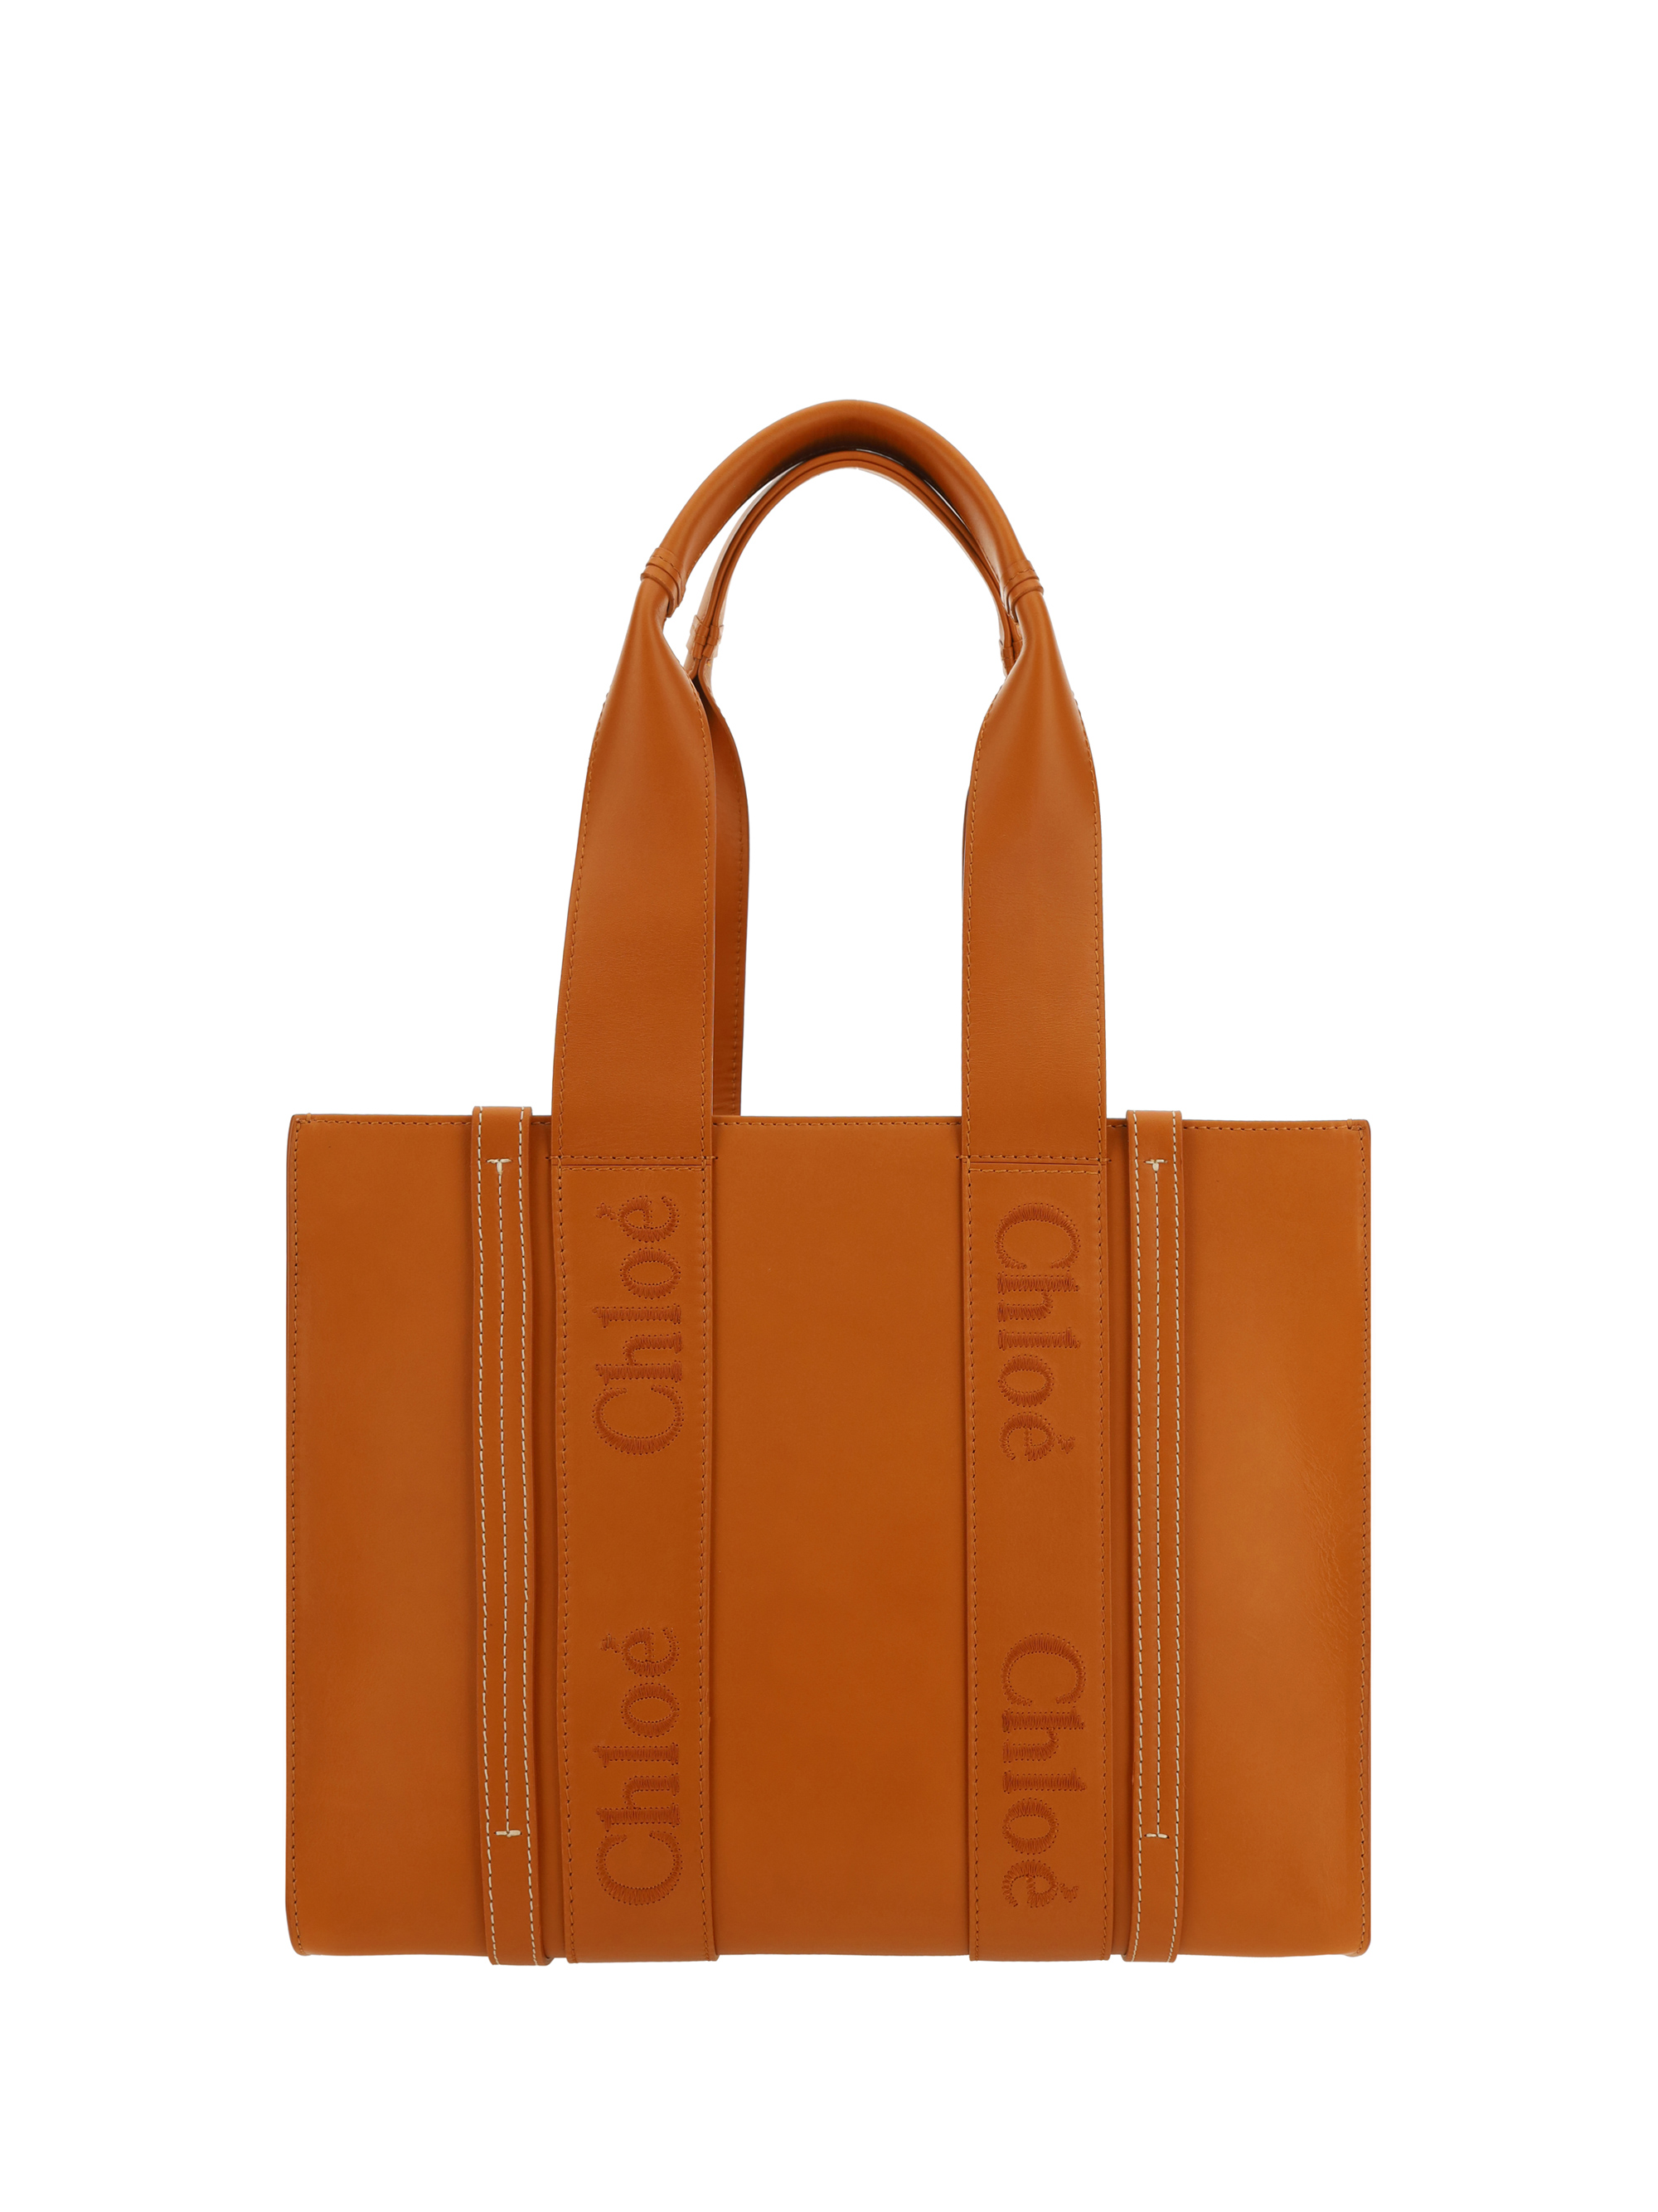 Chloé Woody Handbag In Caramel